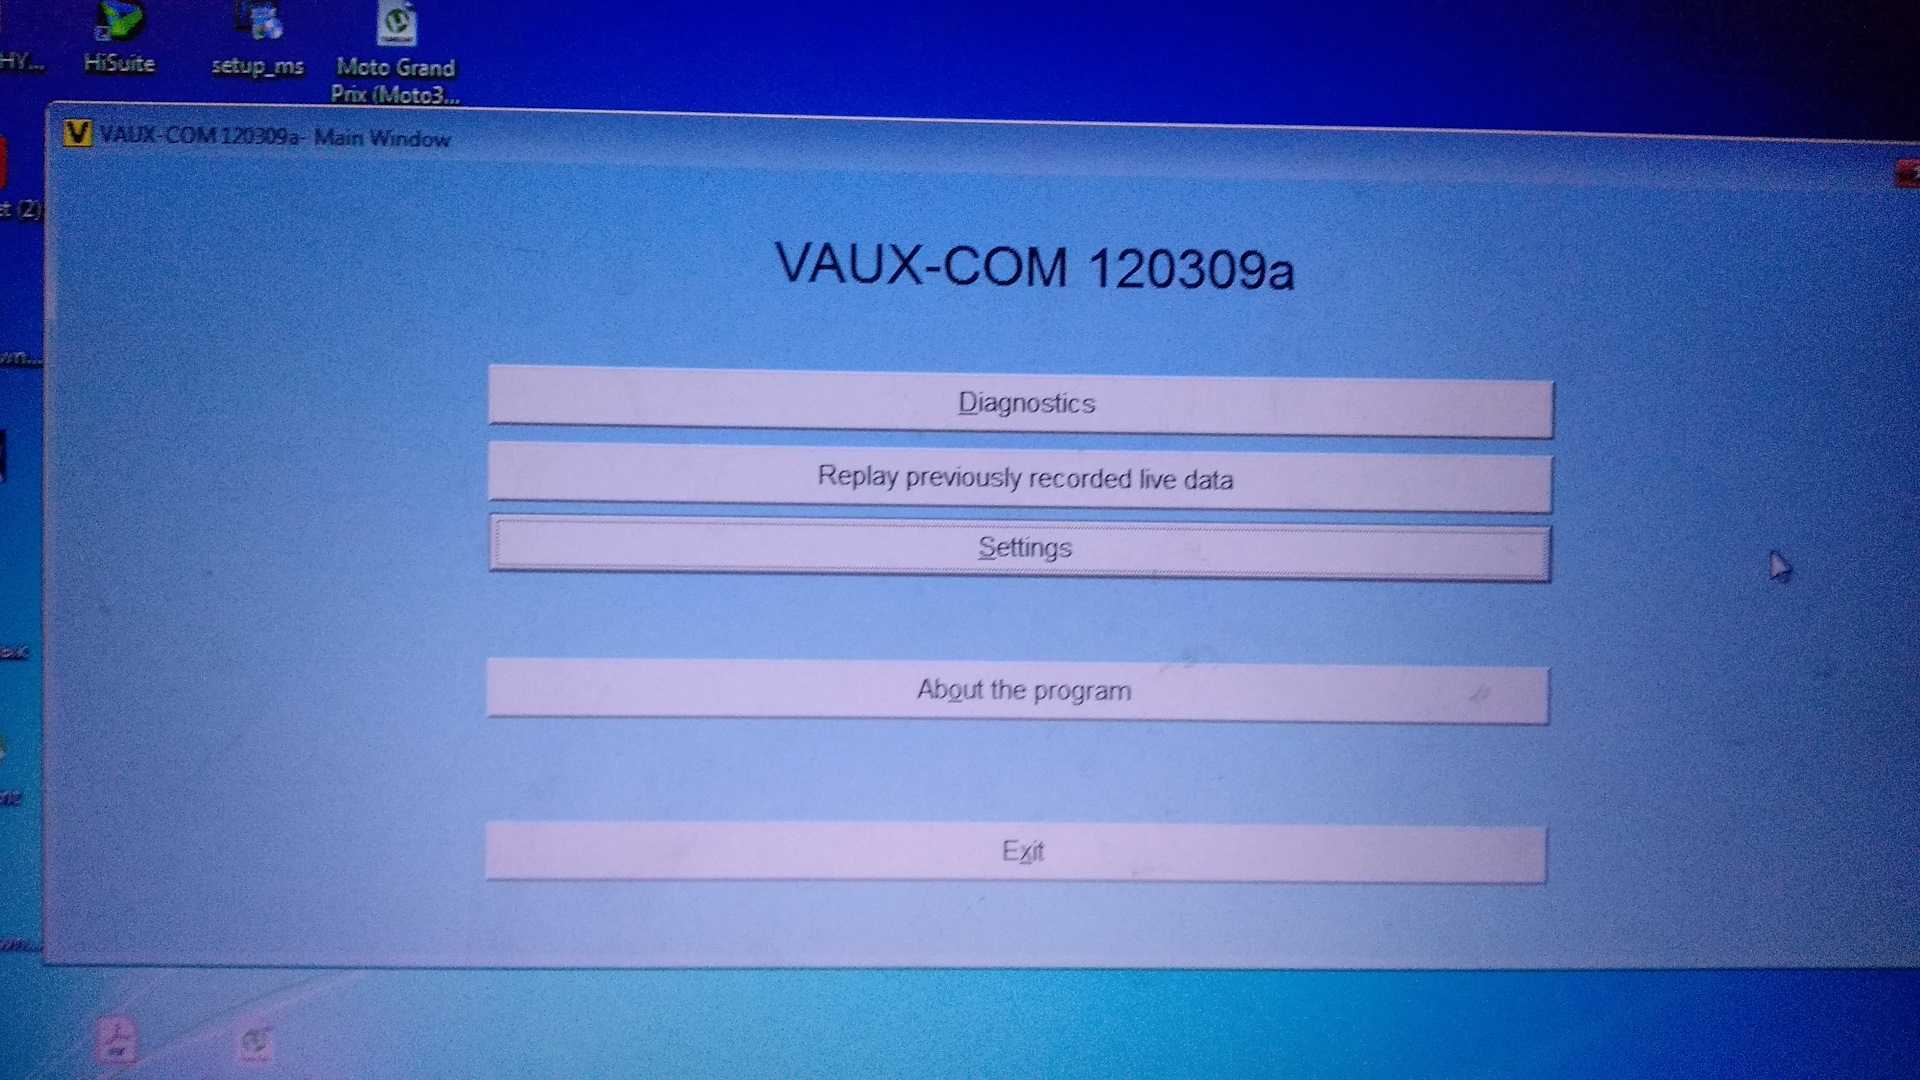 A++ opcom 2021 200603a diagnostic tools op com v1.70 v1.95 real pic18f458 can be flash update for opel diagnostic scanner v1.99